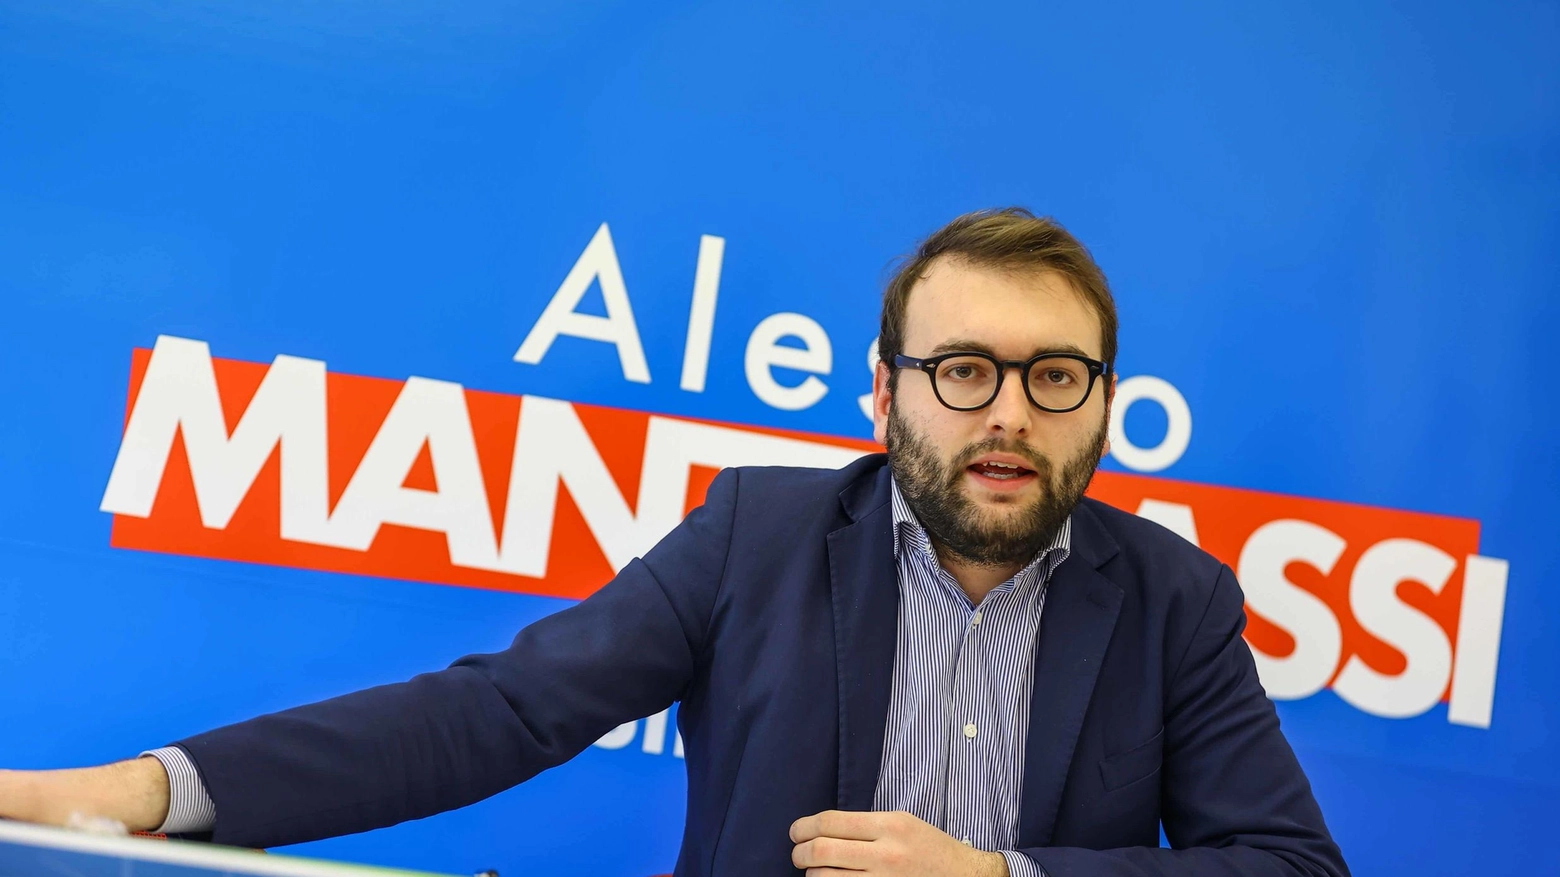 Il candidato del centrosinistra Alessio Mantellassi presenta il programma elettorale a Empoli, in un evento di condivisione e confronto con i cittadini e i partiti sostenitori.